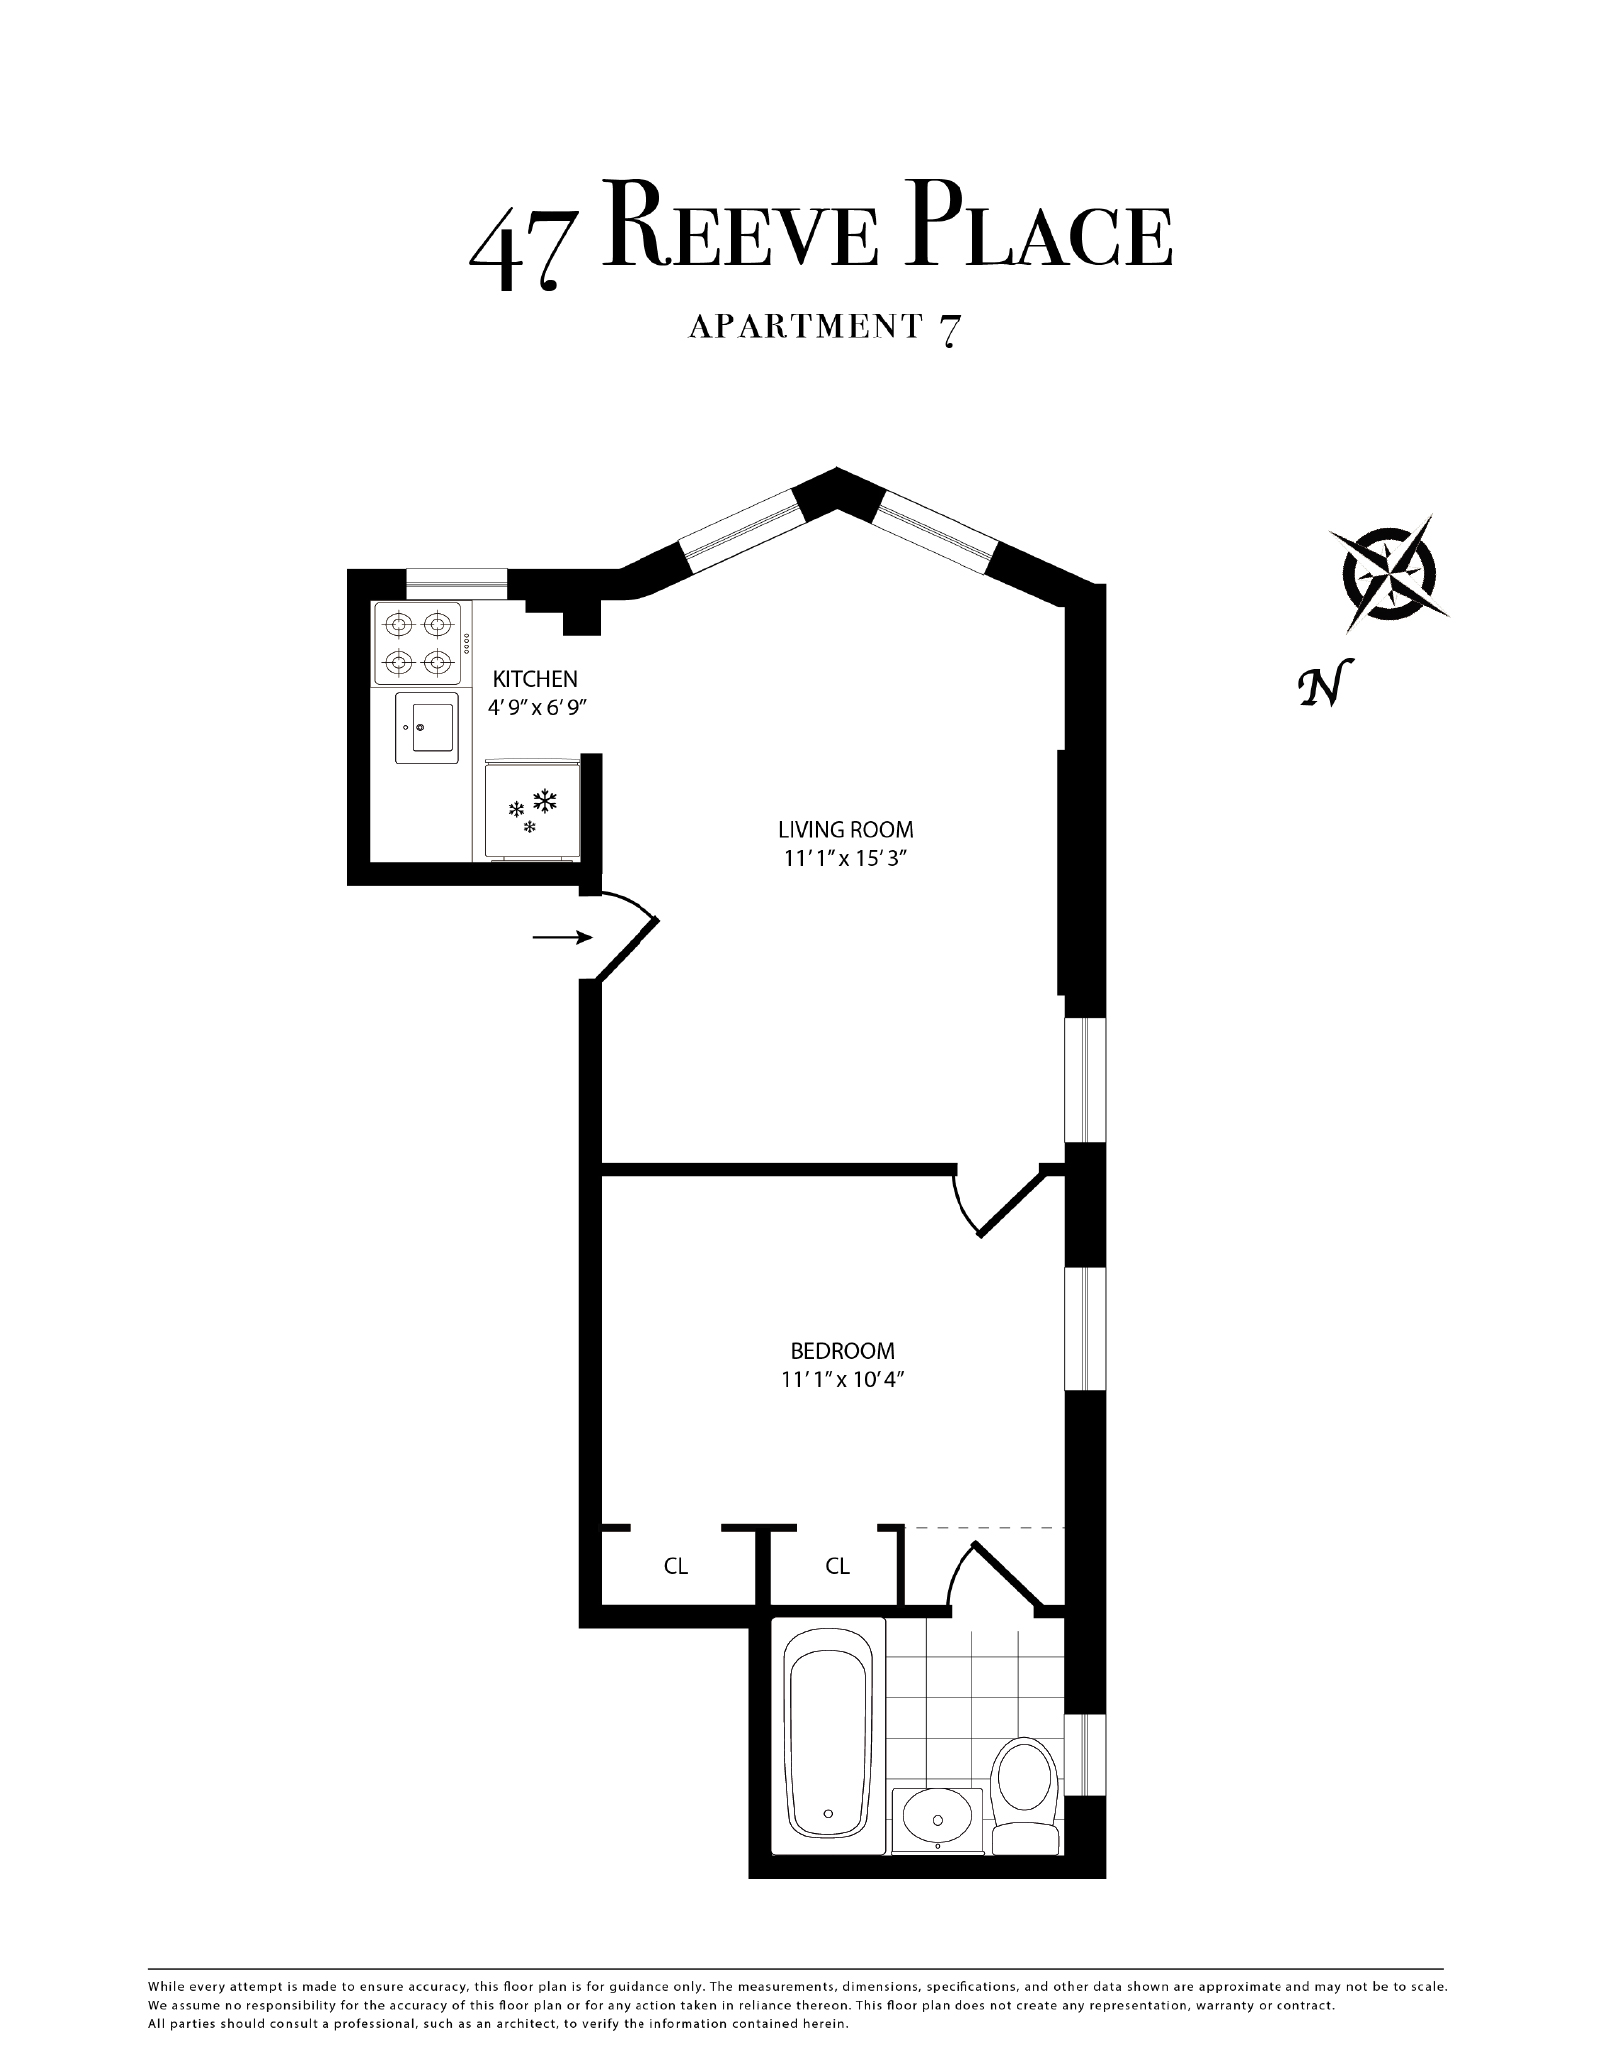 Floorplan of 47 Reeve Pl